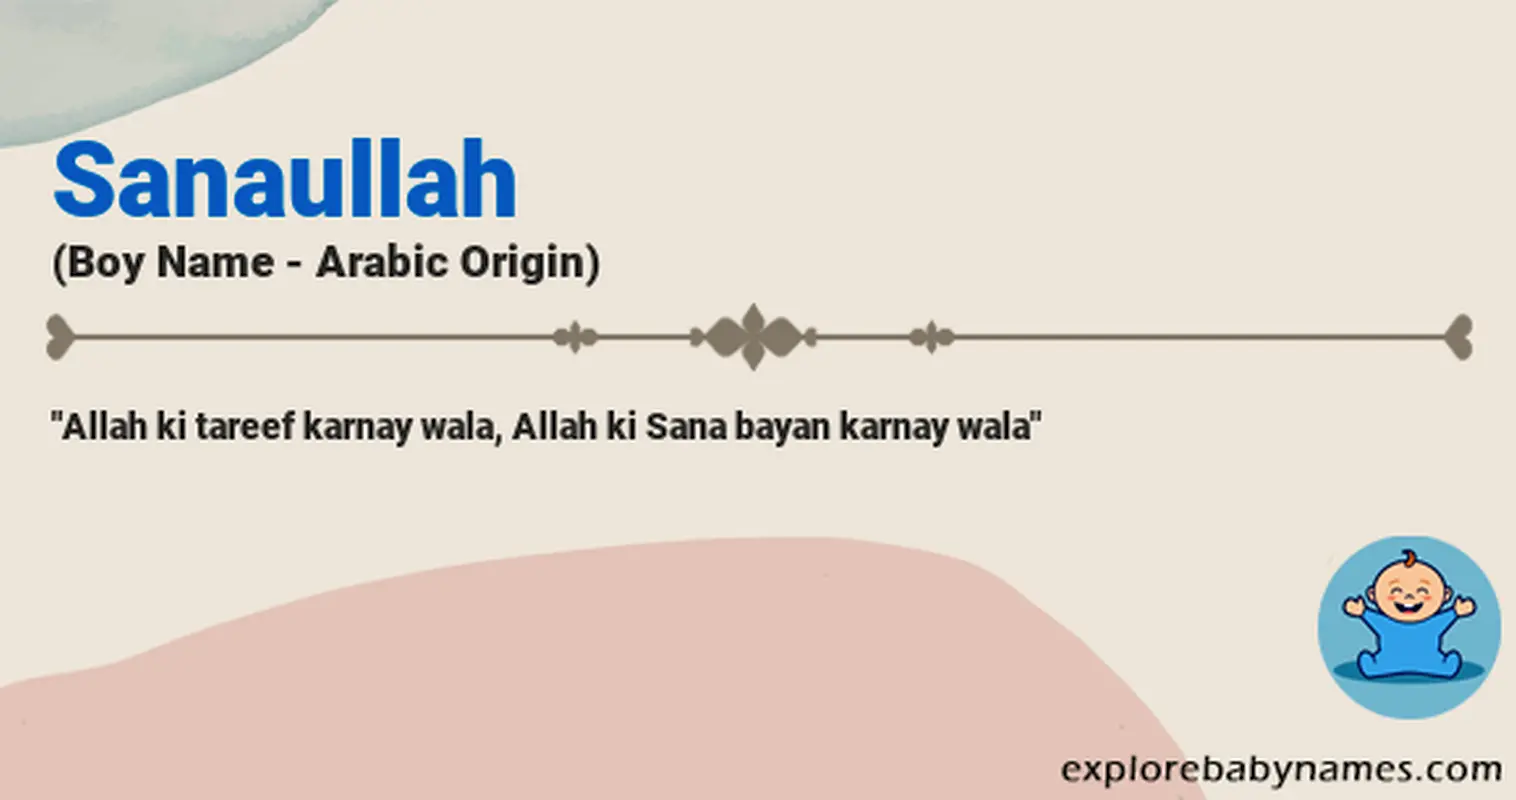 Meaning of Sanaullah